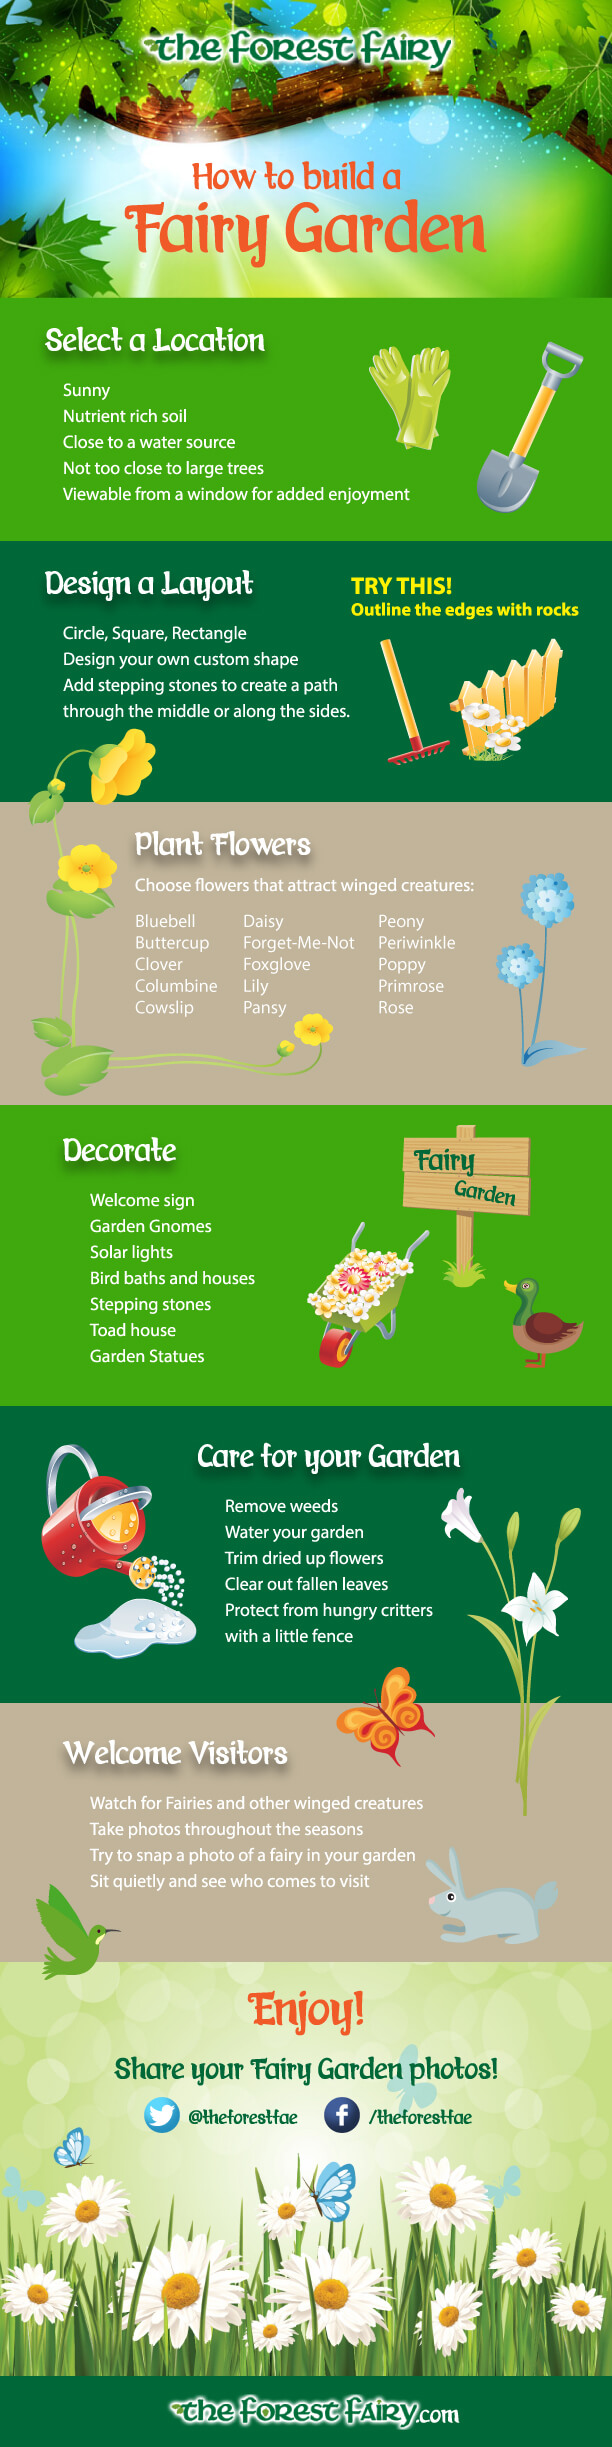 How To Build A Fairy Garden